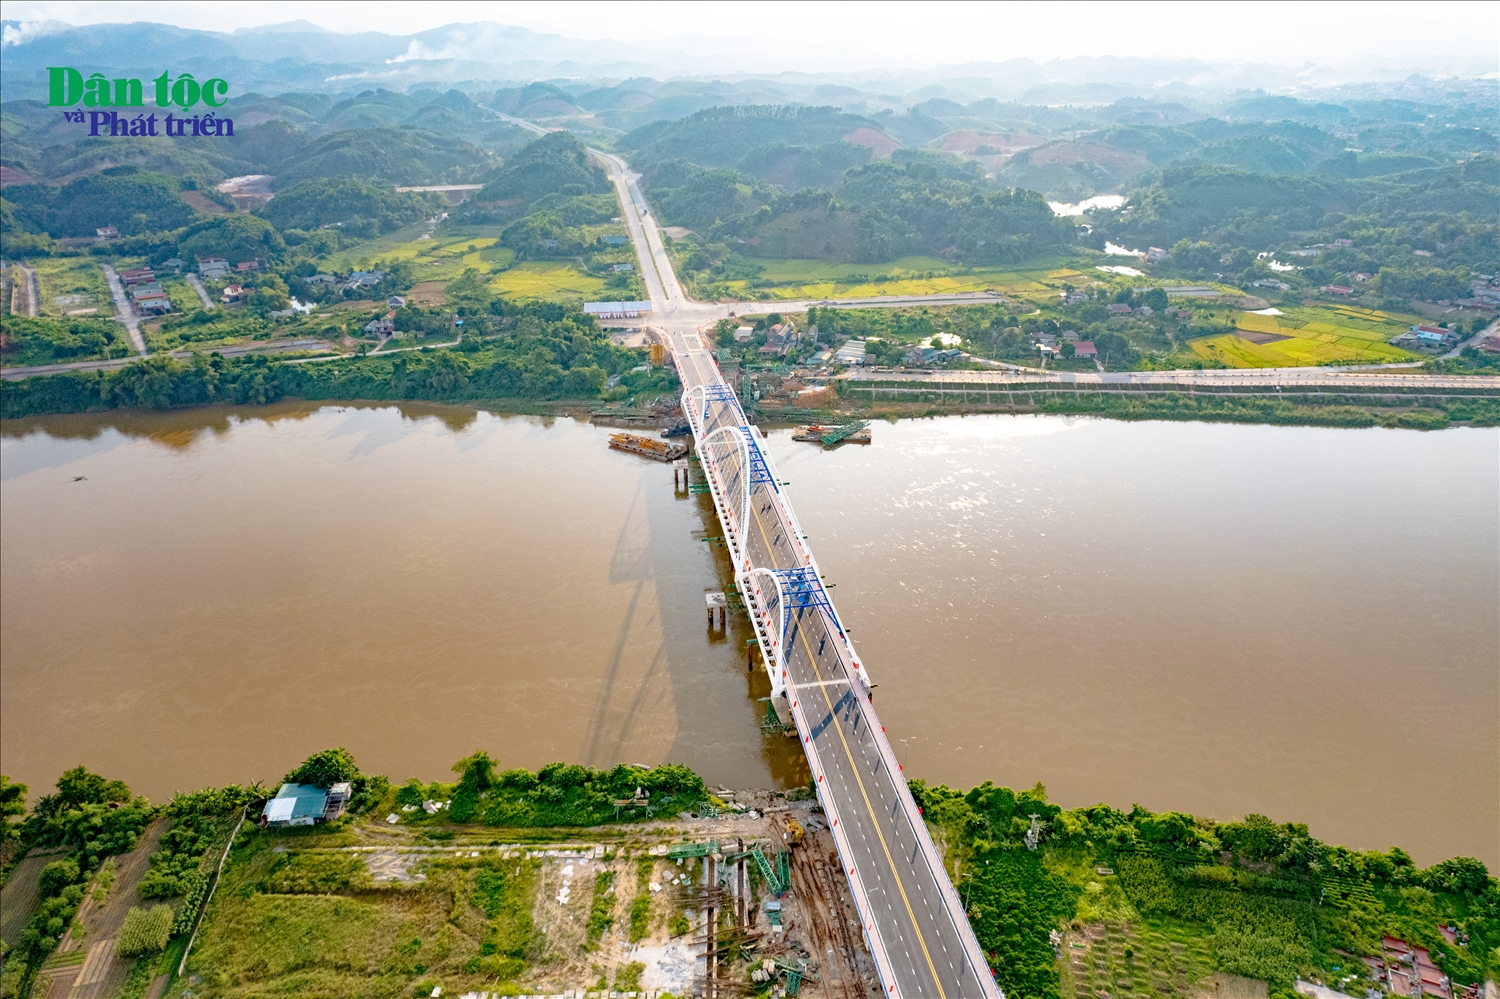 Cây cầu là điểm kết nối quan trọng giữa Quốc lộ 32C và Cao tốc Nội Bài - Lào Cai